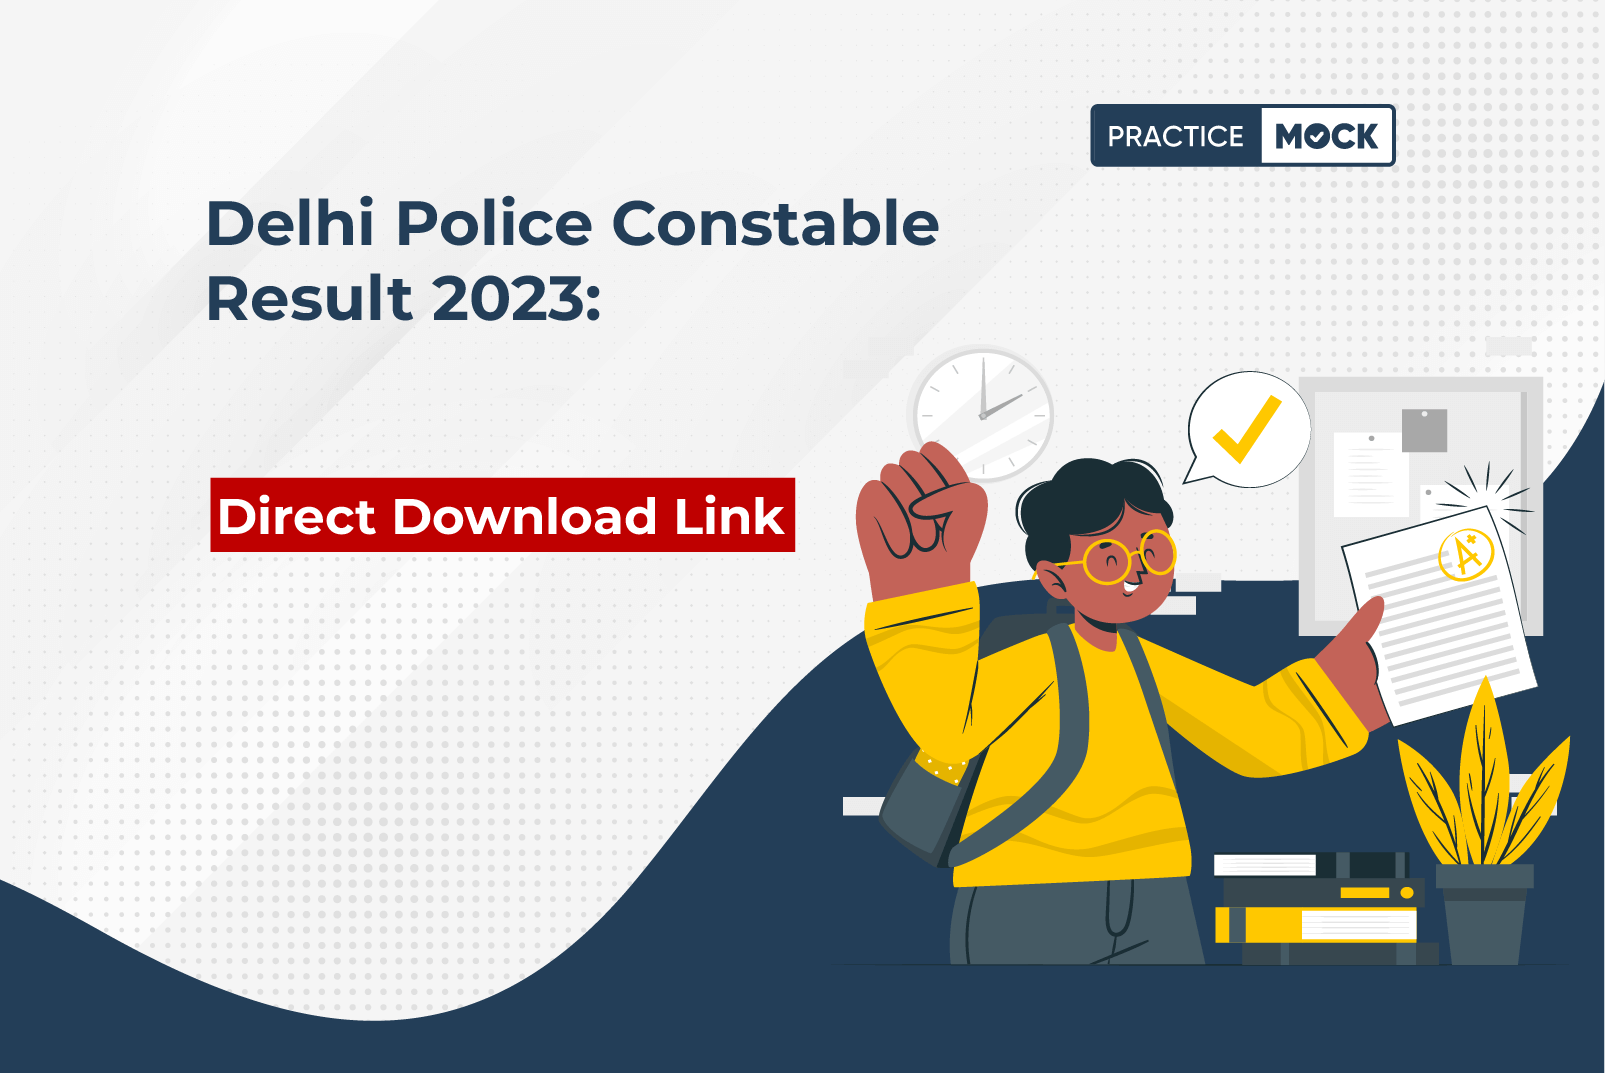 Delhi Police Constable Result 2023 Direct Download Link